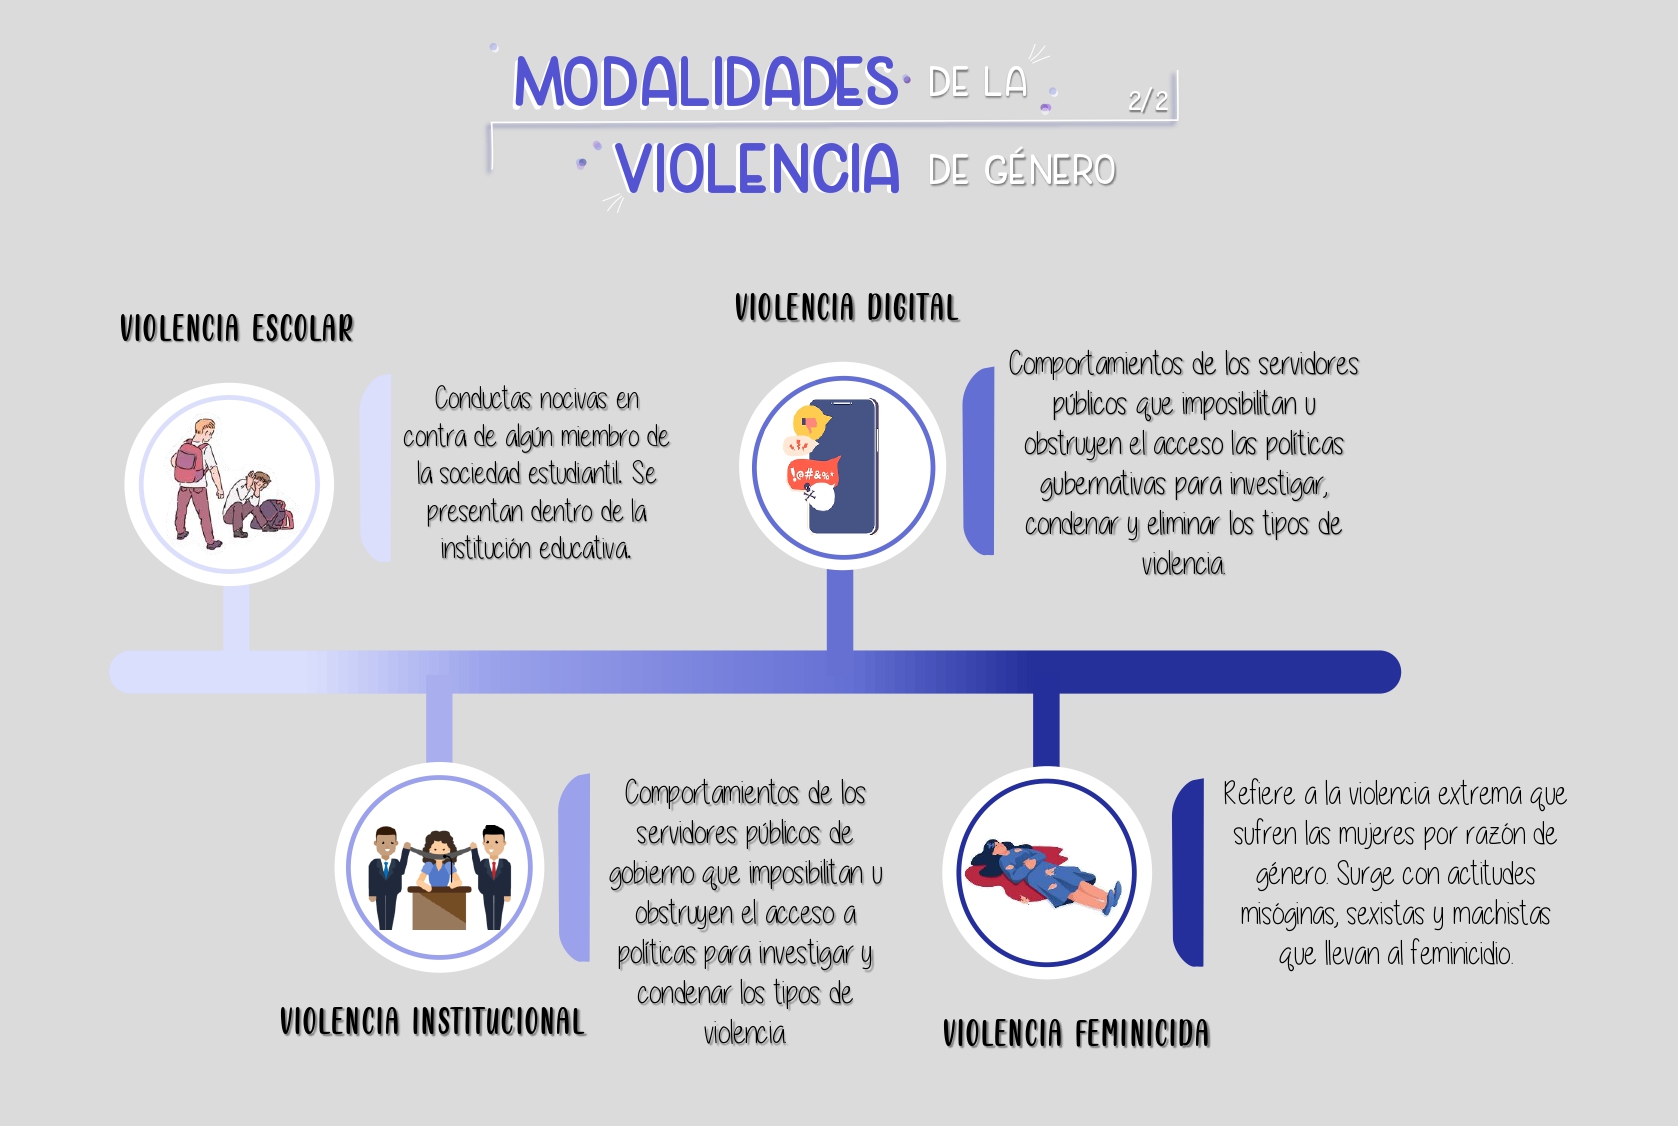 modalidades-violencia-2.2